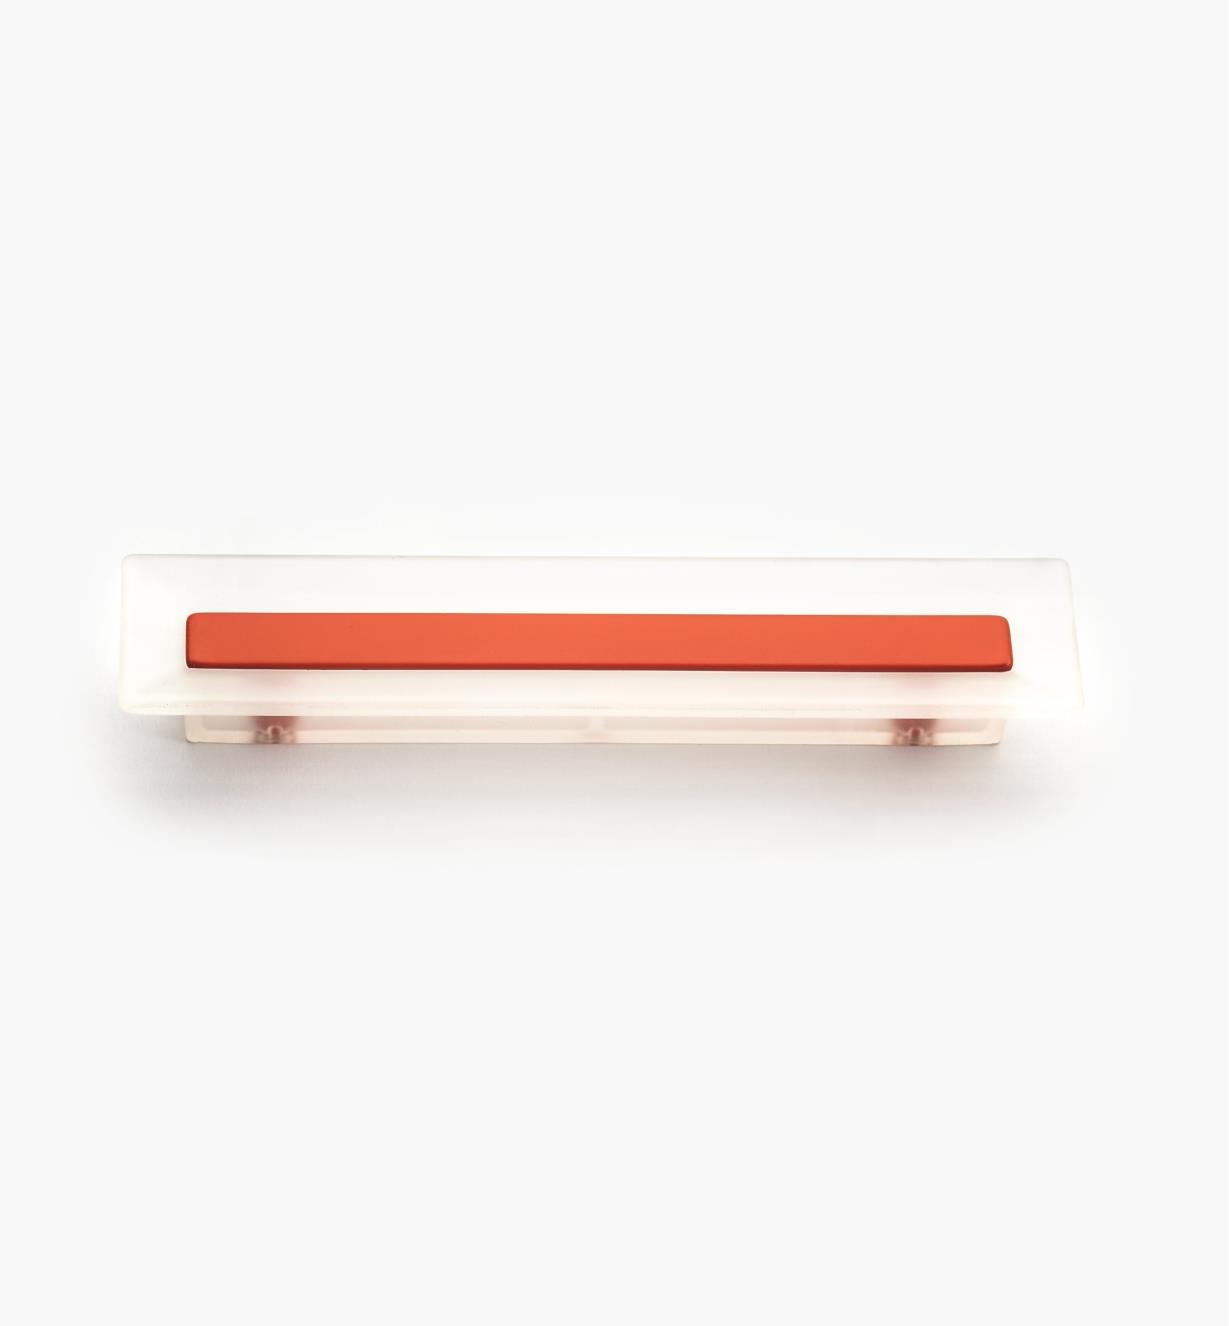 00W5433 - Poignée rectangulaire, 96 mm, série Bungee, rouge